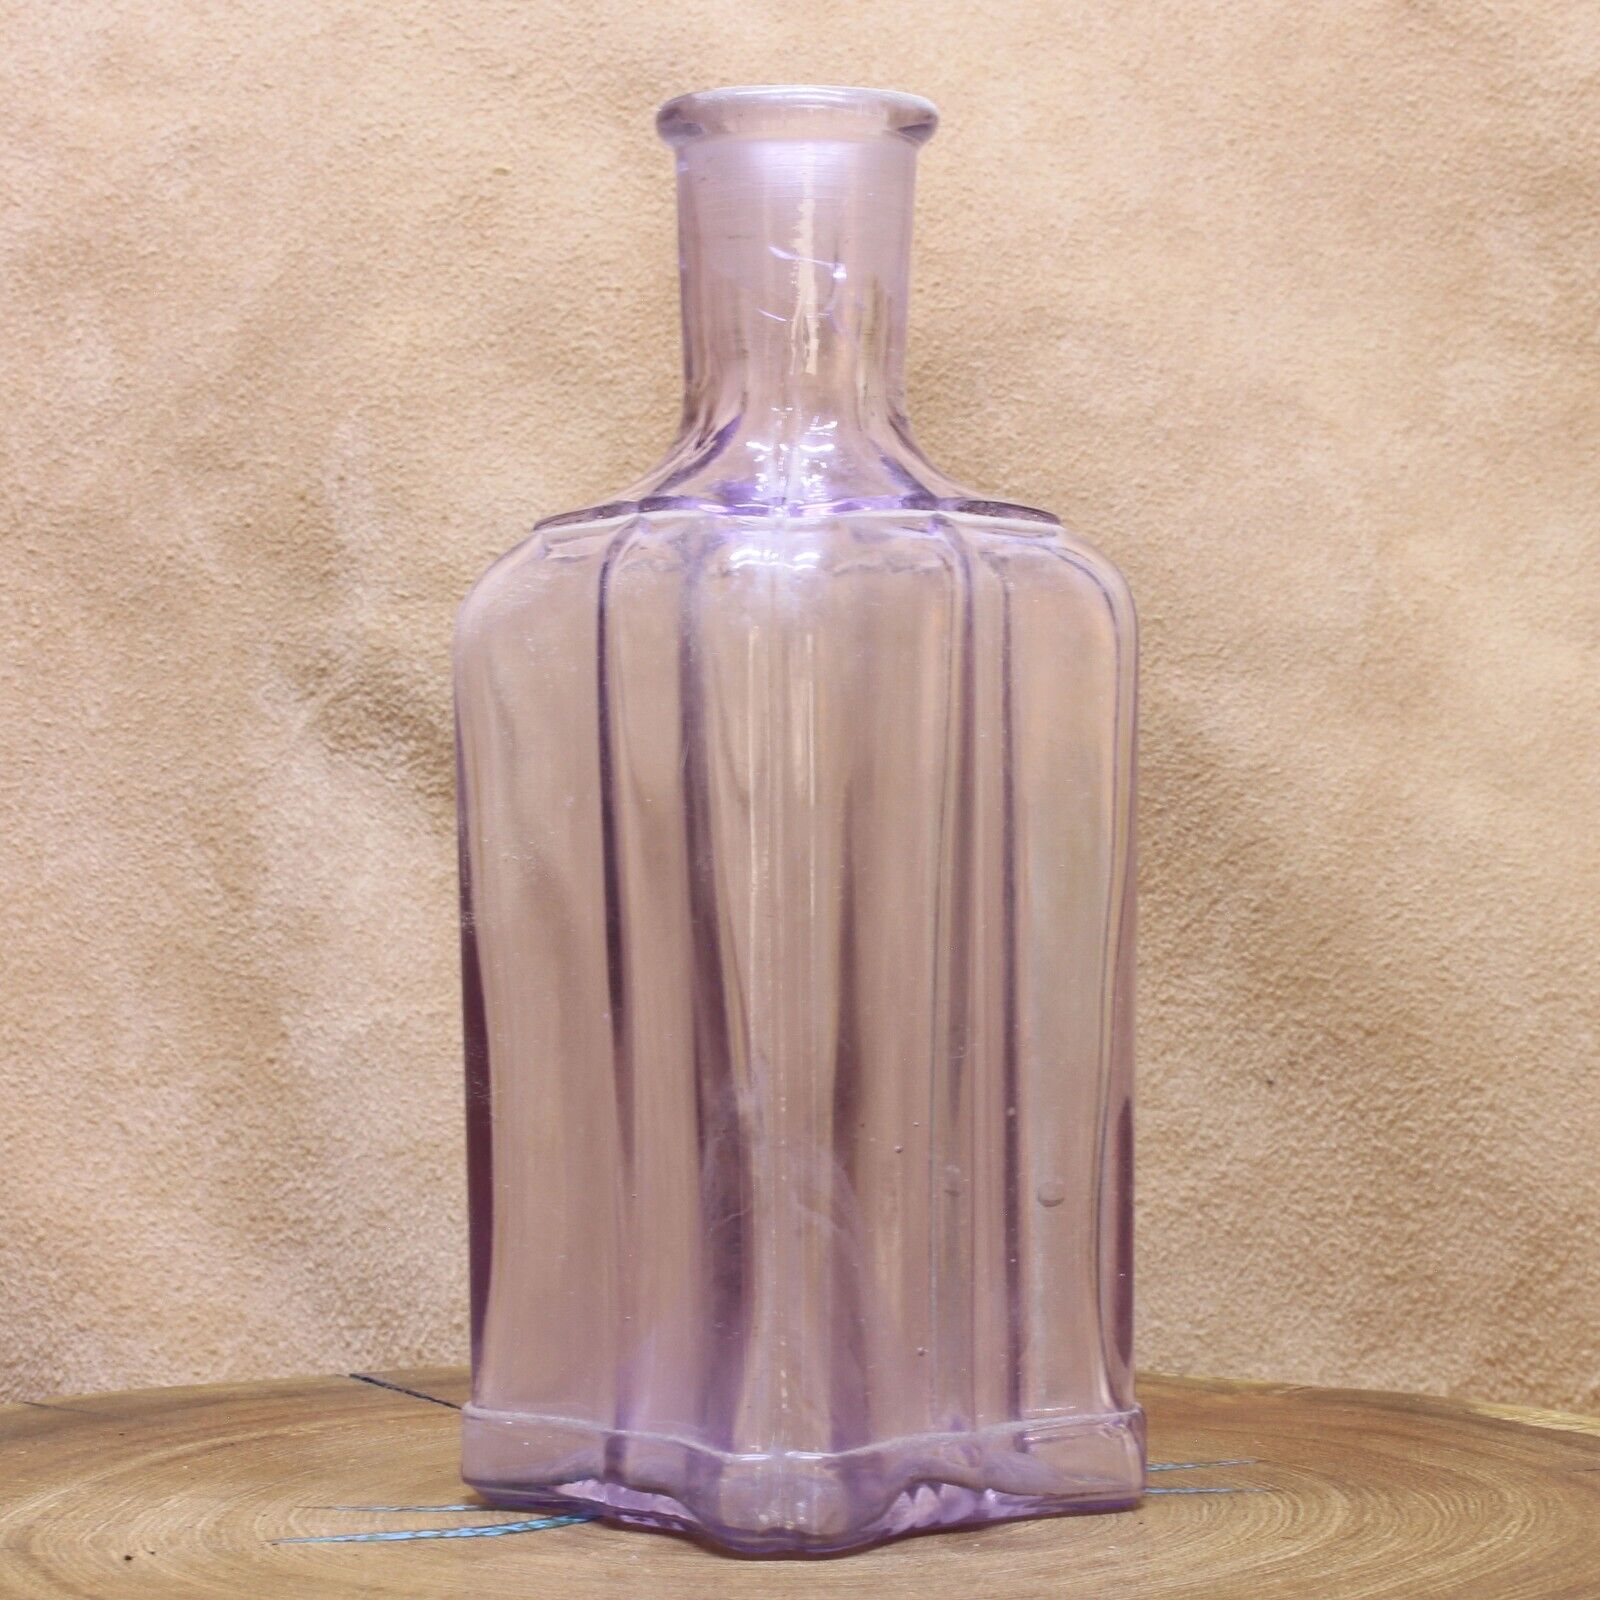 Unusual Antique Bottle Sunburst Bottom Ribbed Sides 1900 Bubbles Purple Glass